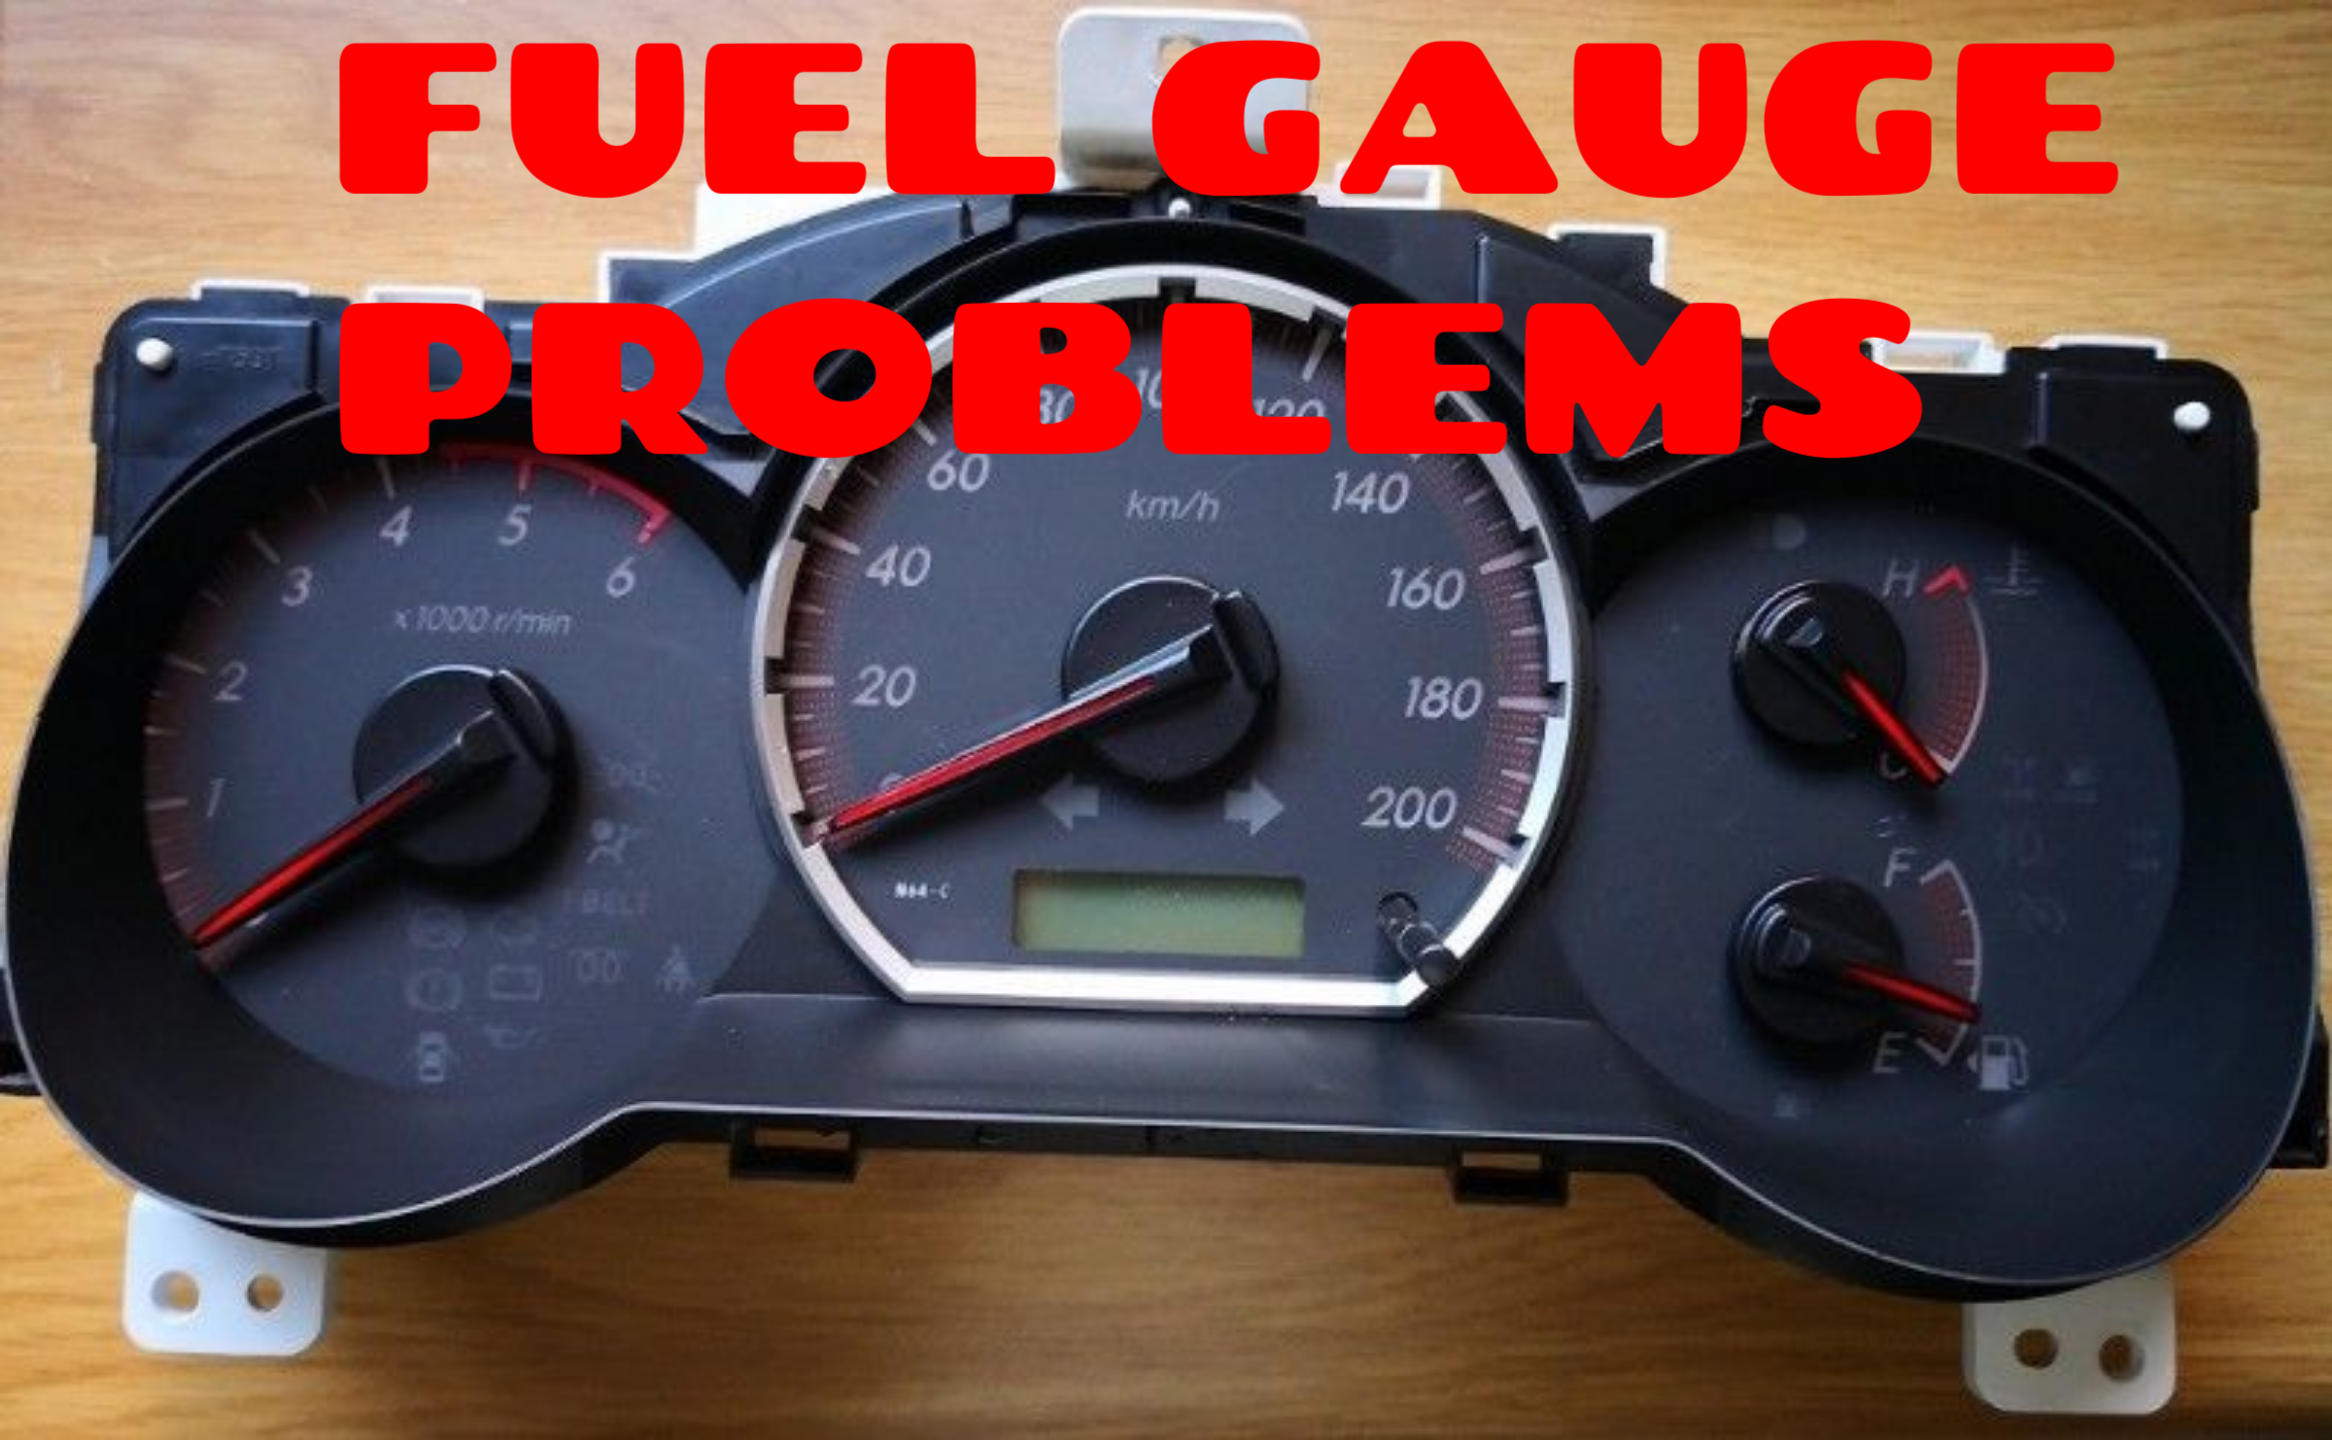 Fuel gauge repairs